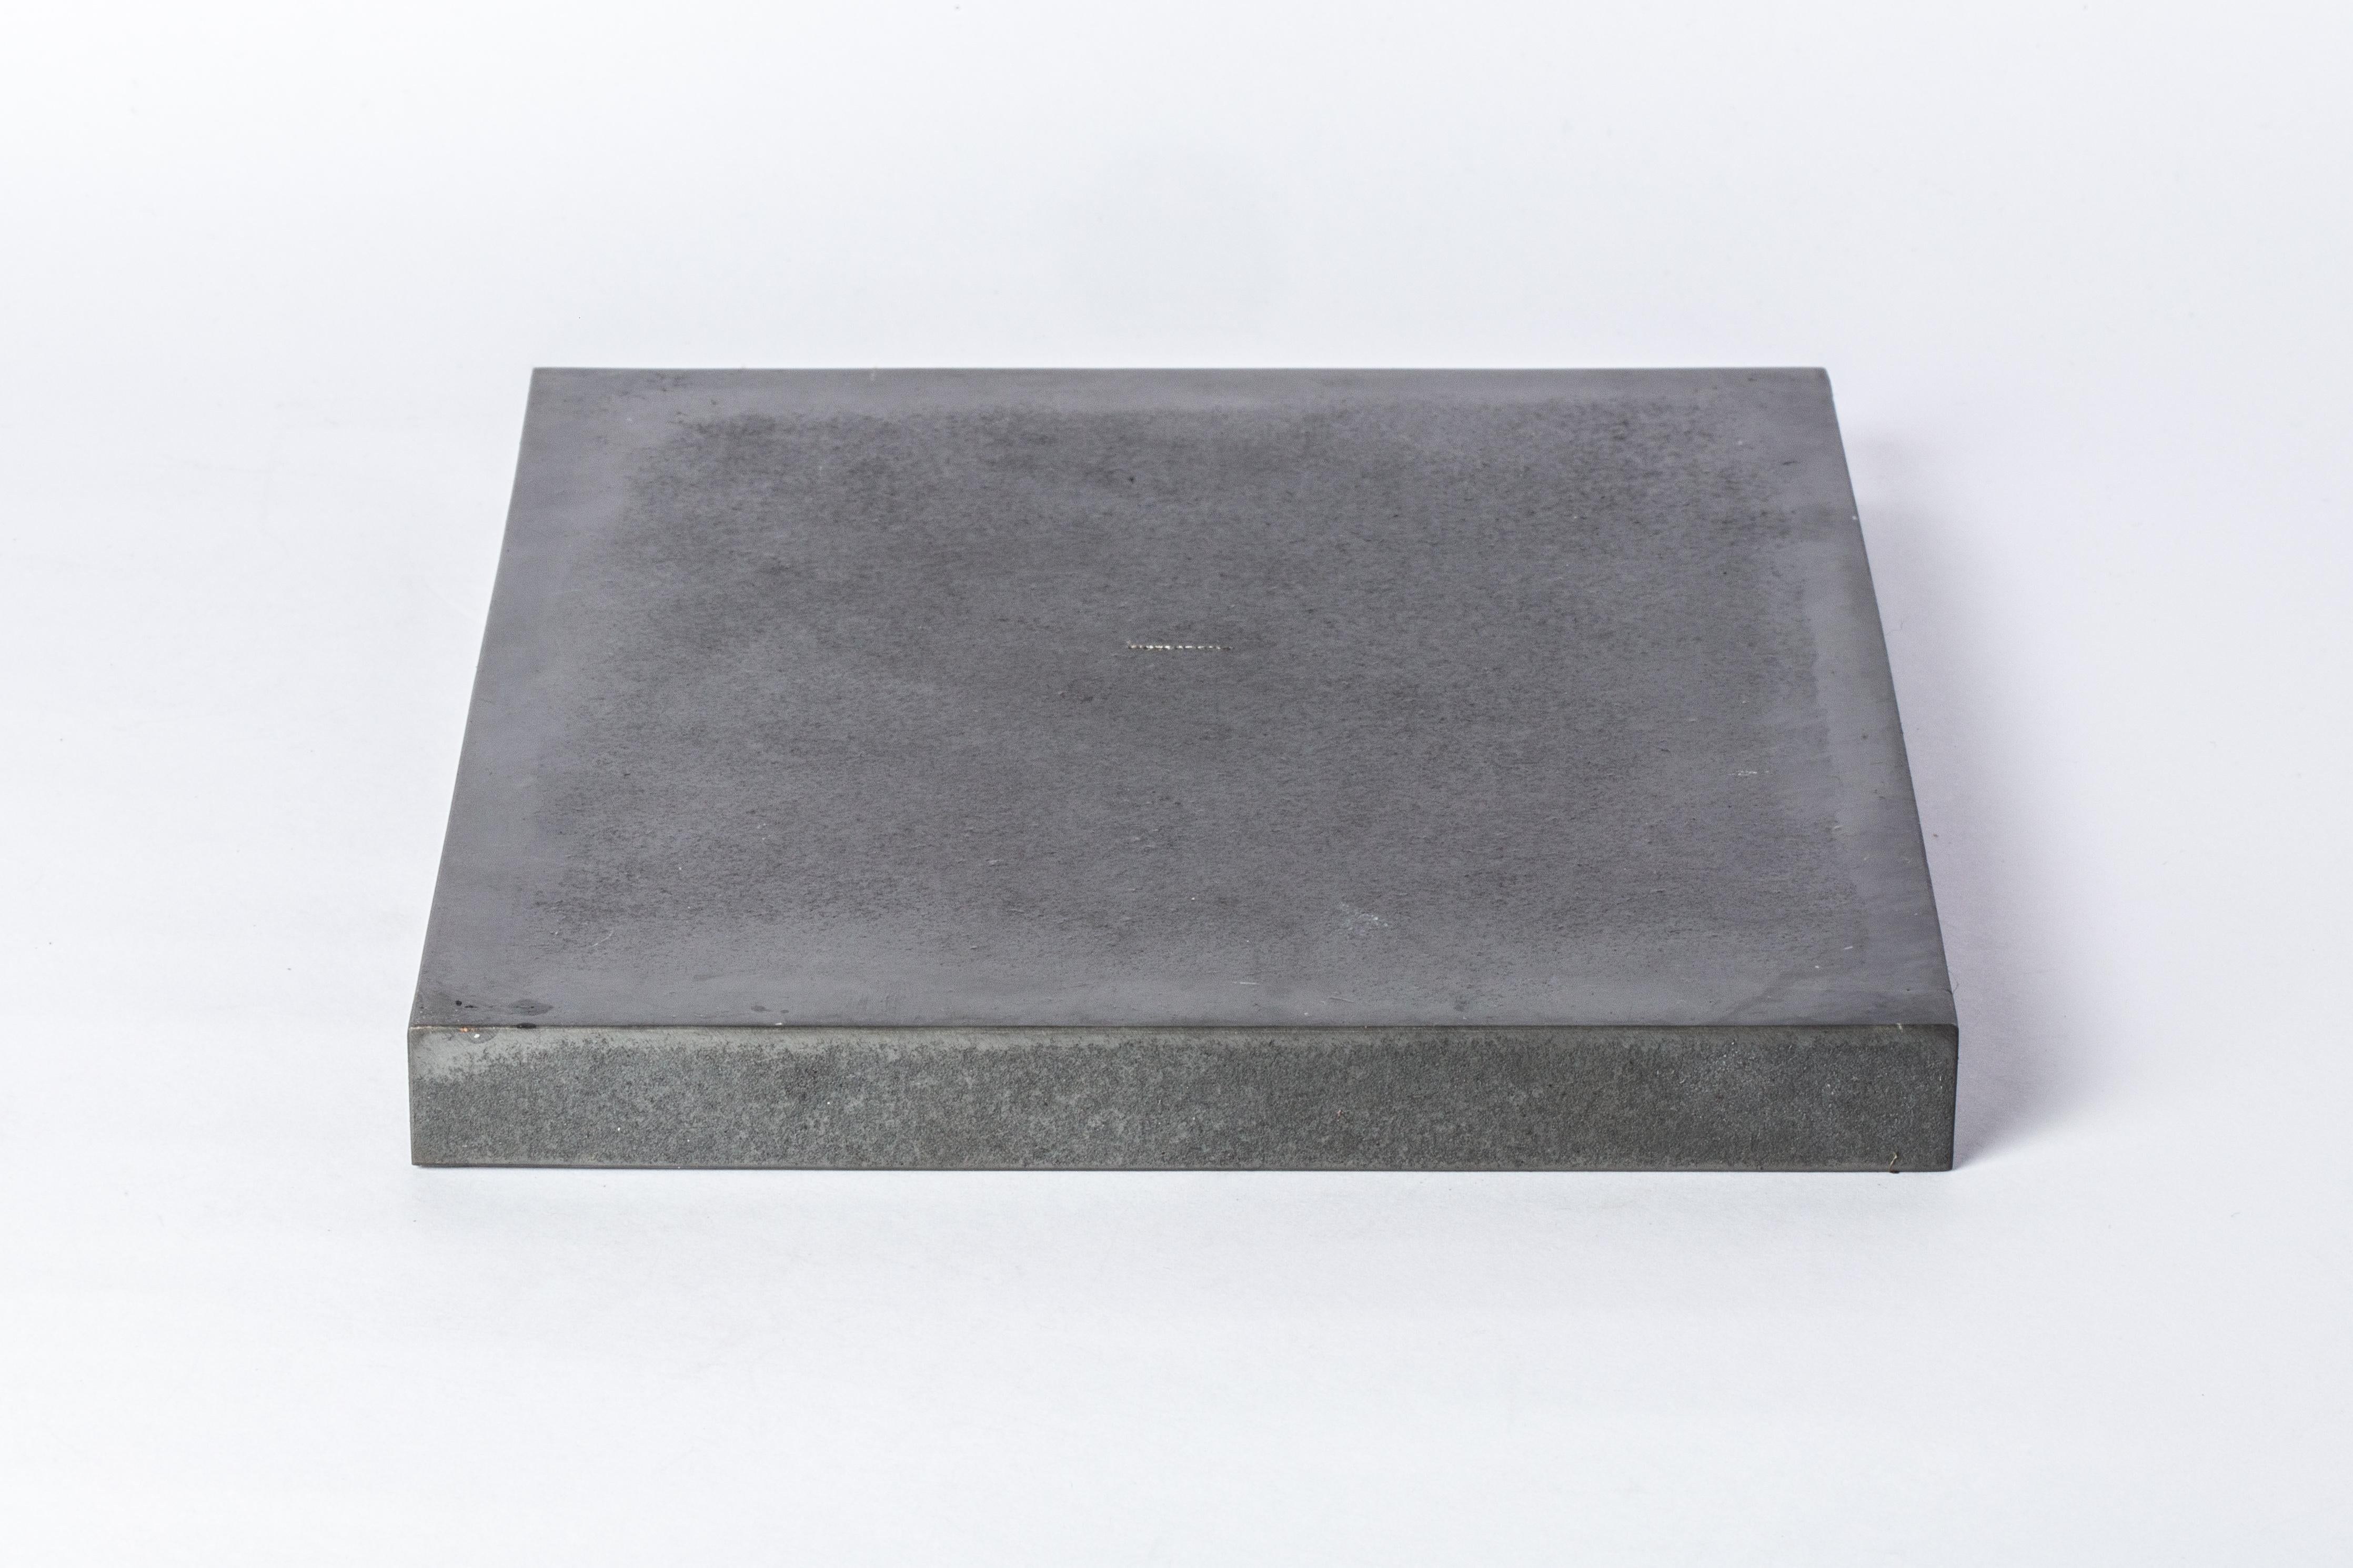 Dieses Tablett ist handgefertigt aus Eisen mit Säureoxidation. Sie ist ein Meisterwerk der Metallverarbeitung und wurde mit größter Sorgfalt gefertigt. Jeder Zentimeter ist ein Zeugnis handwerklichen Könnens, denn jedes Teil wird von Hand